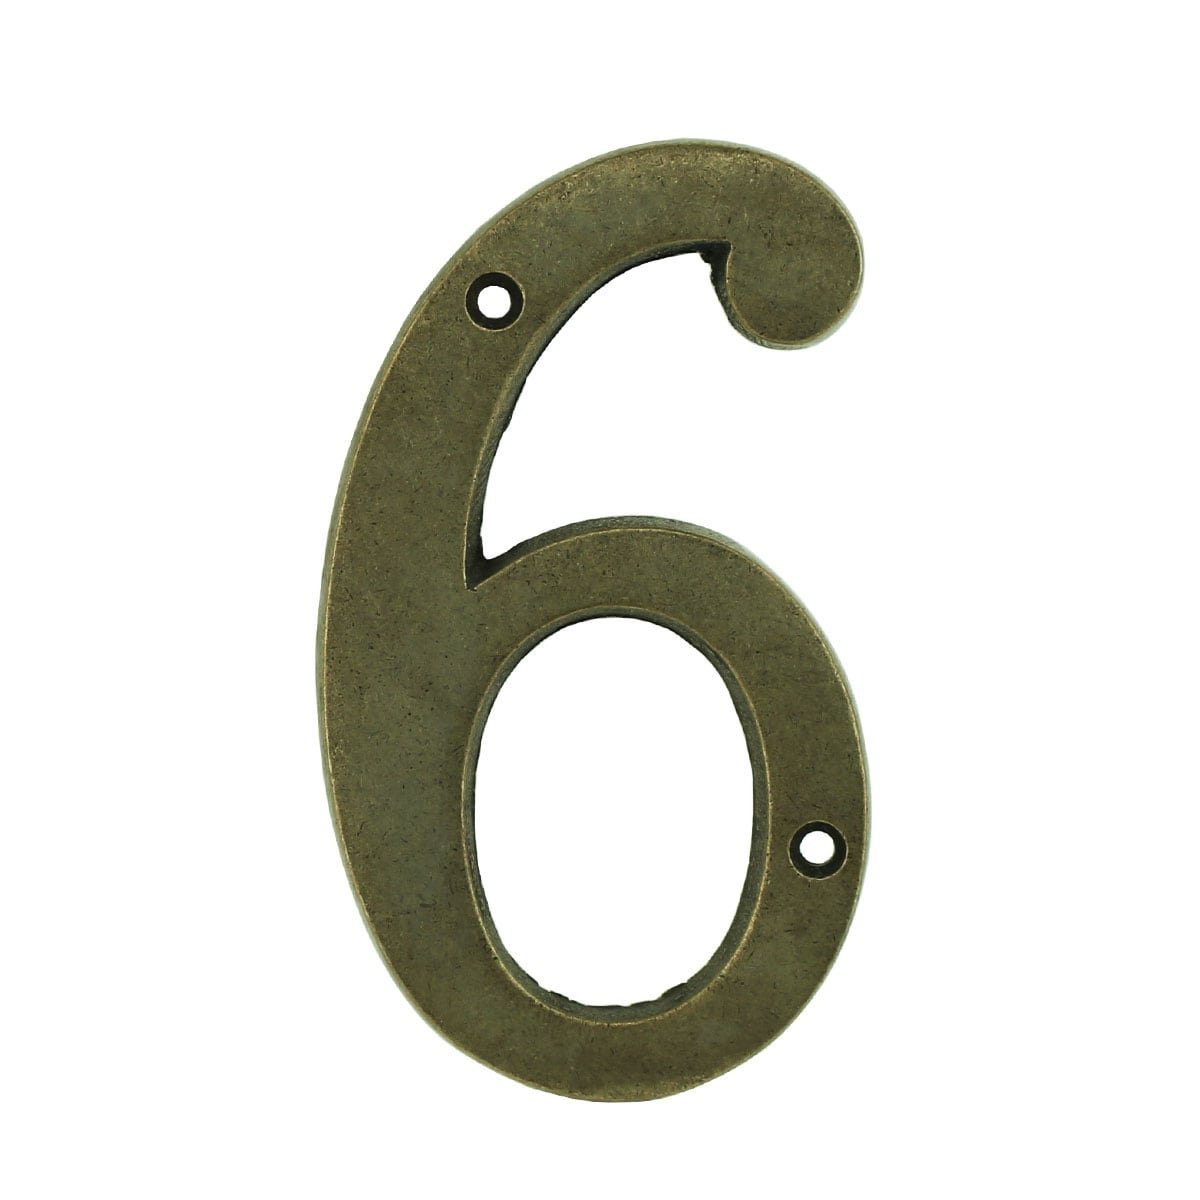 Voordeur getal 6 zes industrieël brons - 102 mm